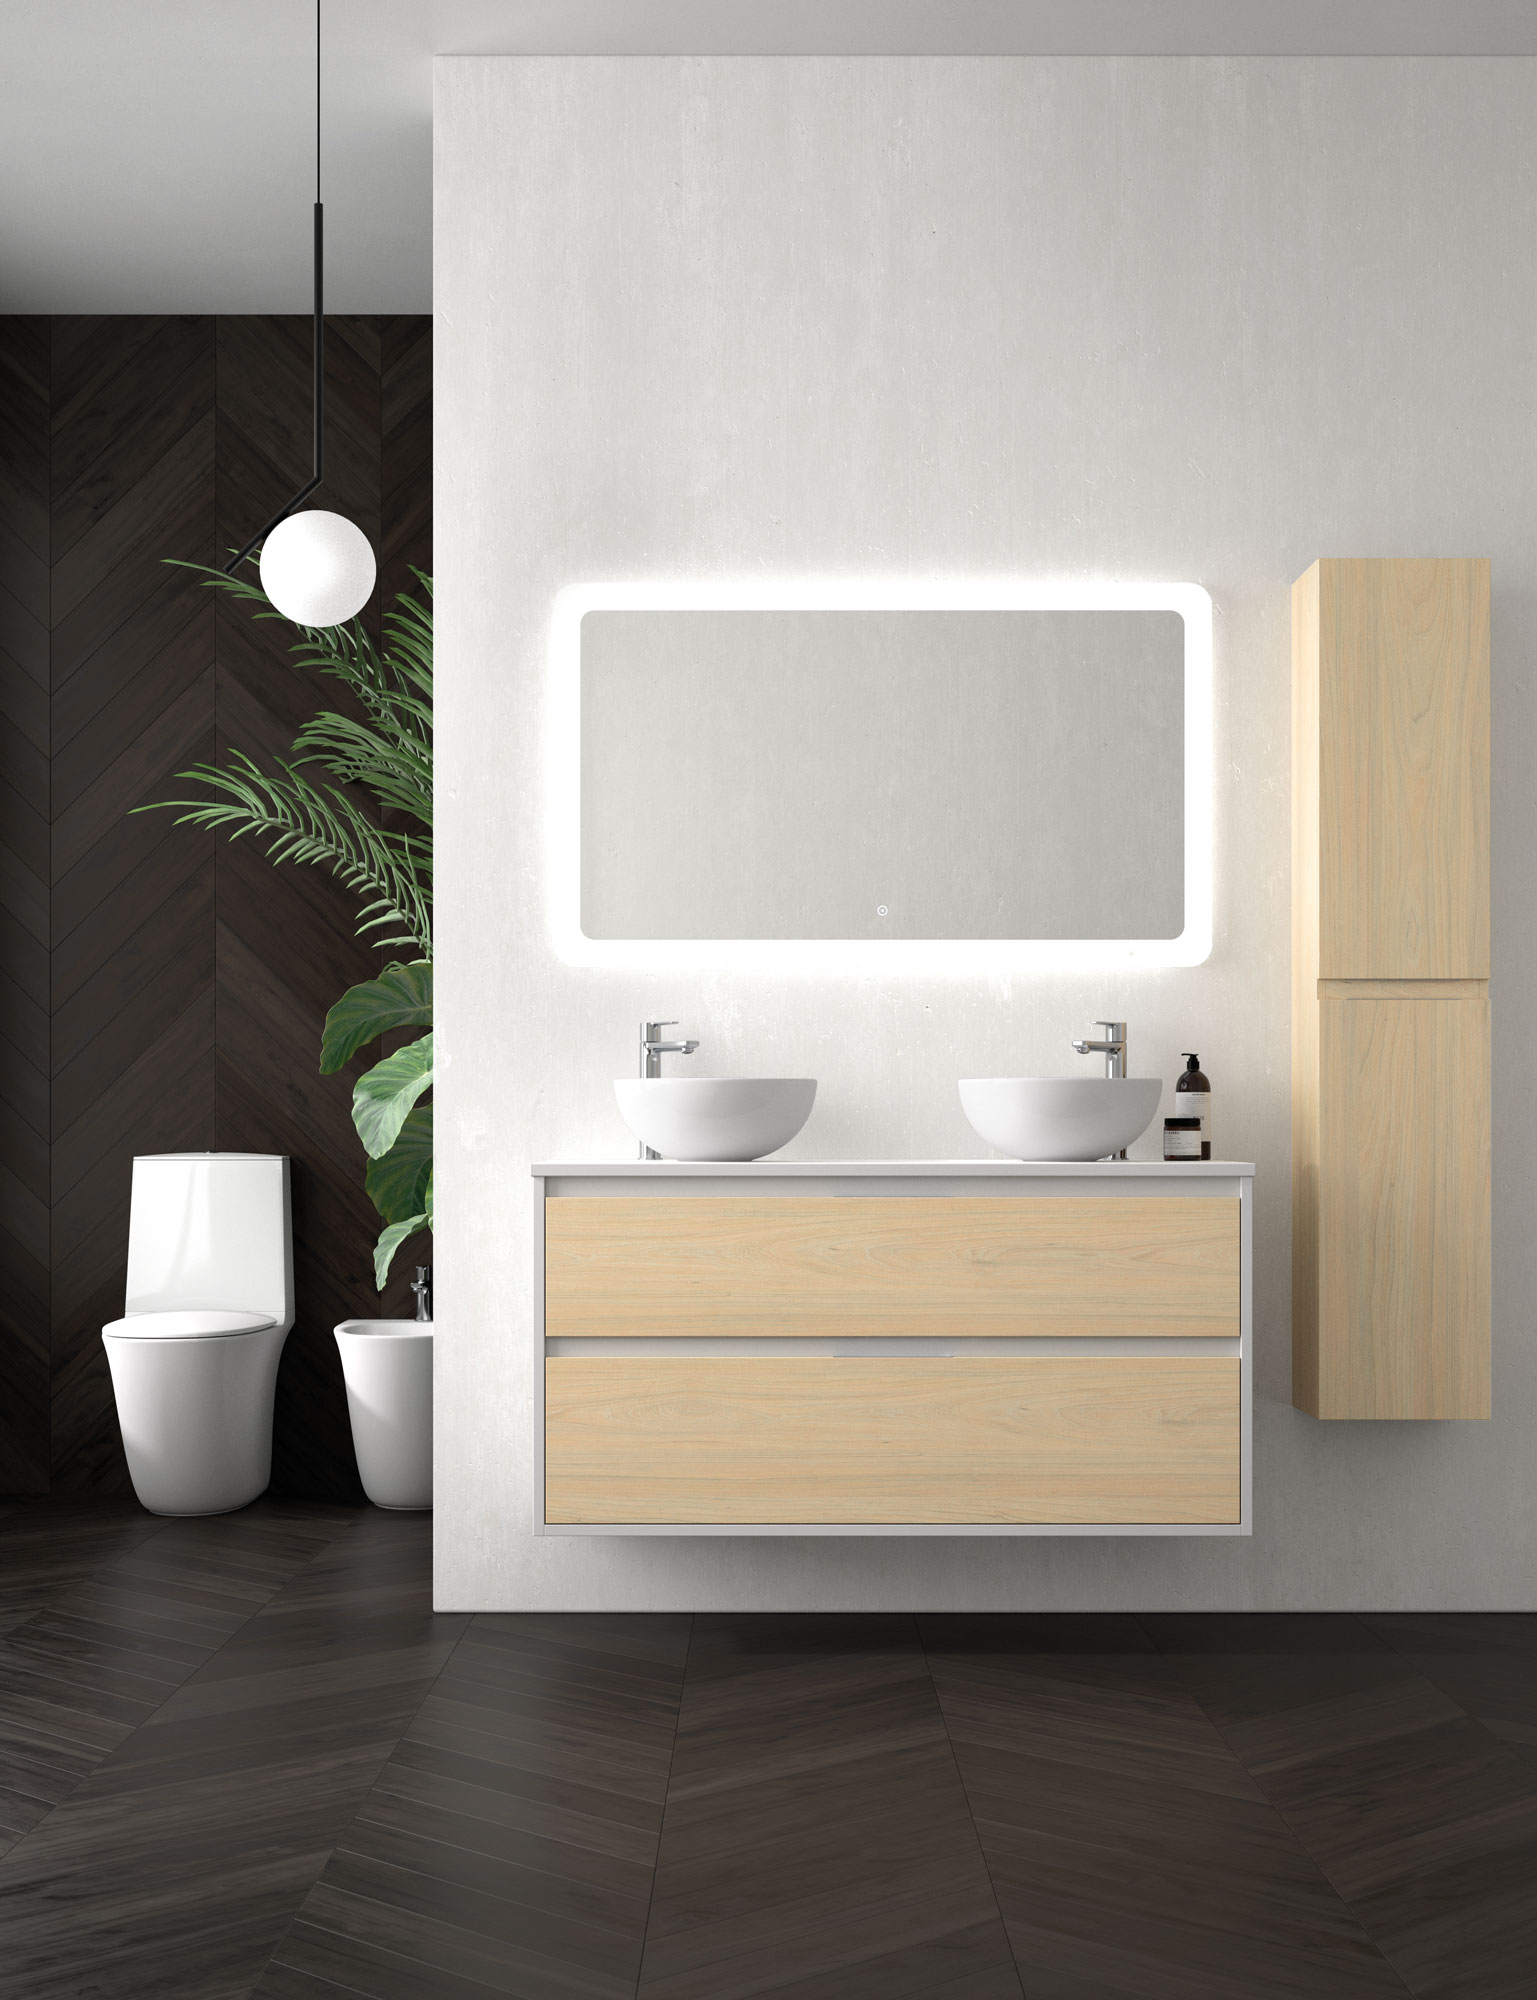 ADVANCE, muebles de baño modulares y personalizables - Avila Dos